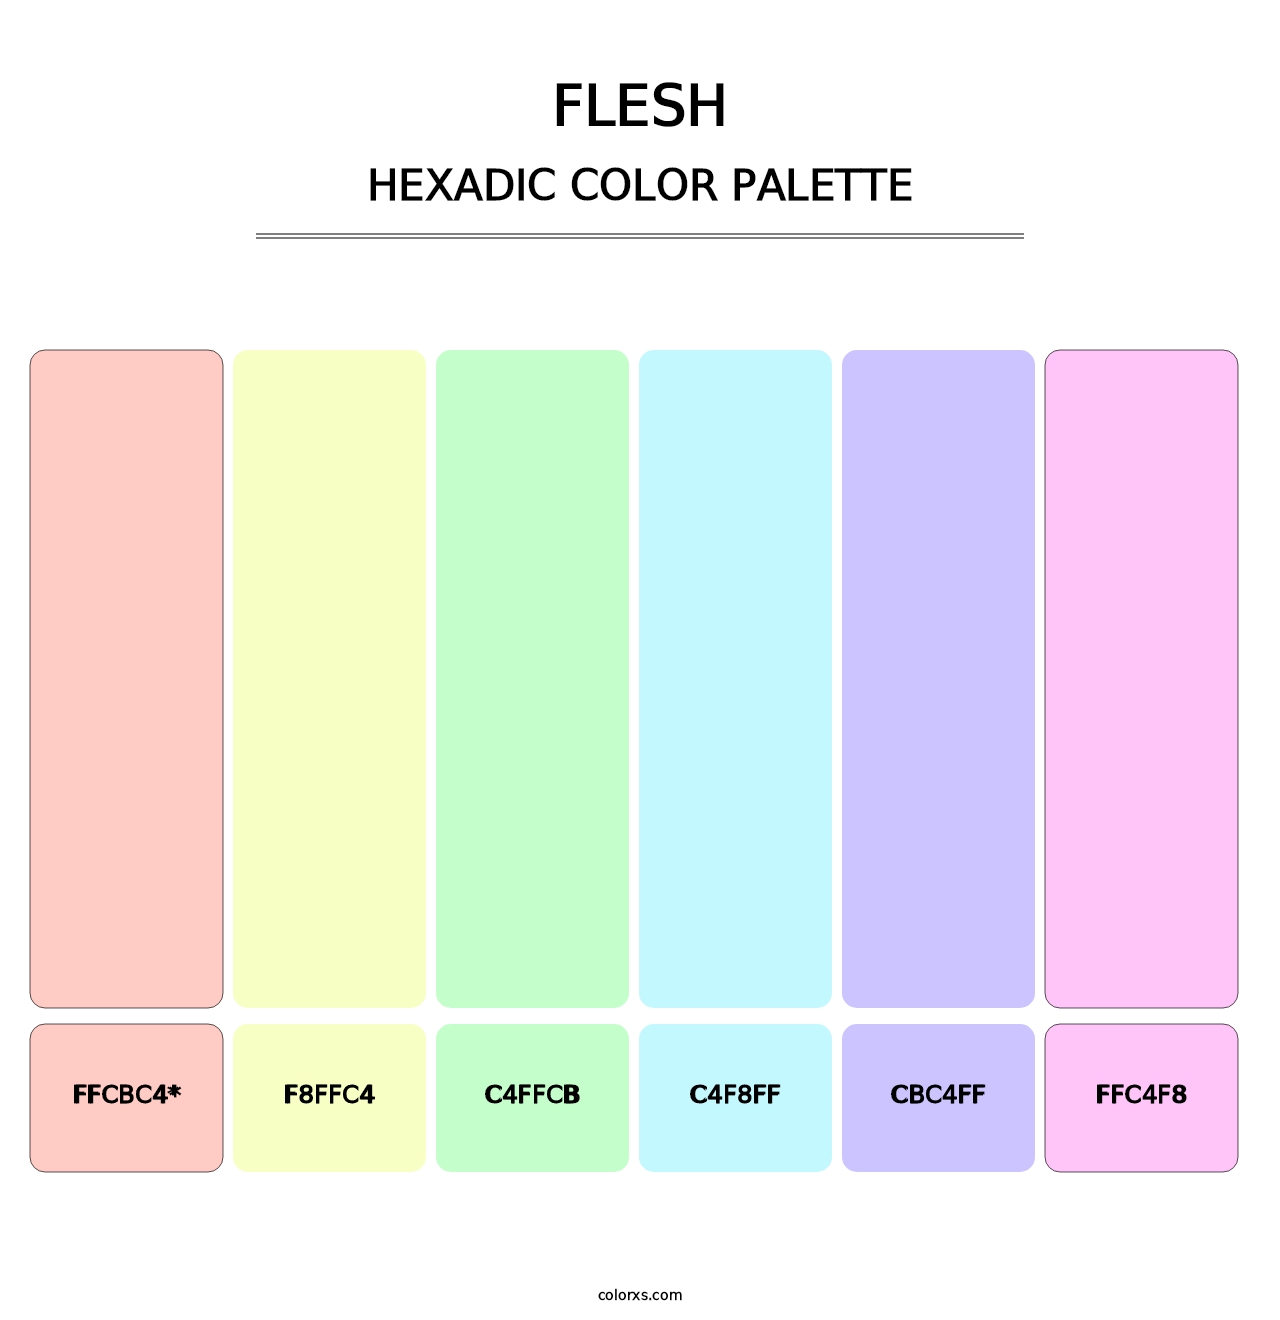 Flesh - Hexadic Color Palette